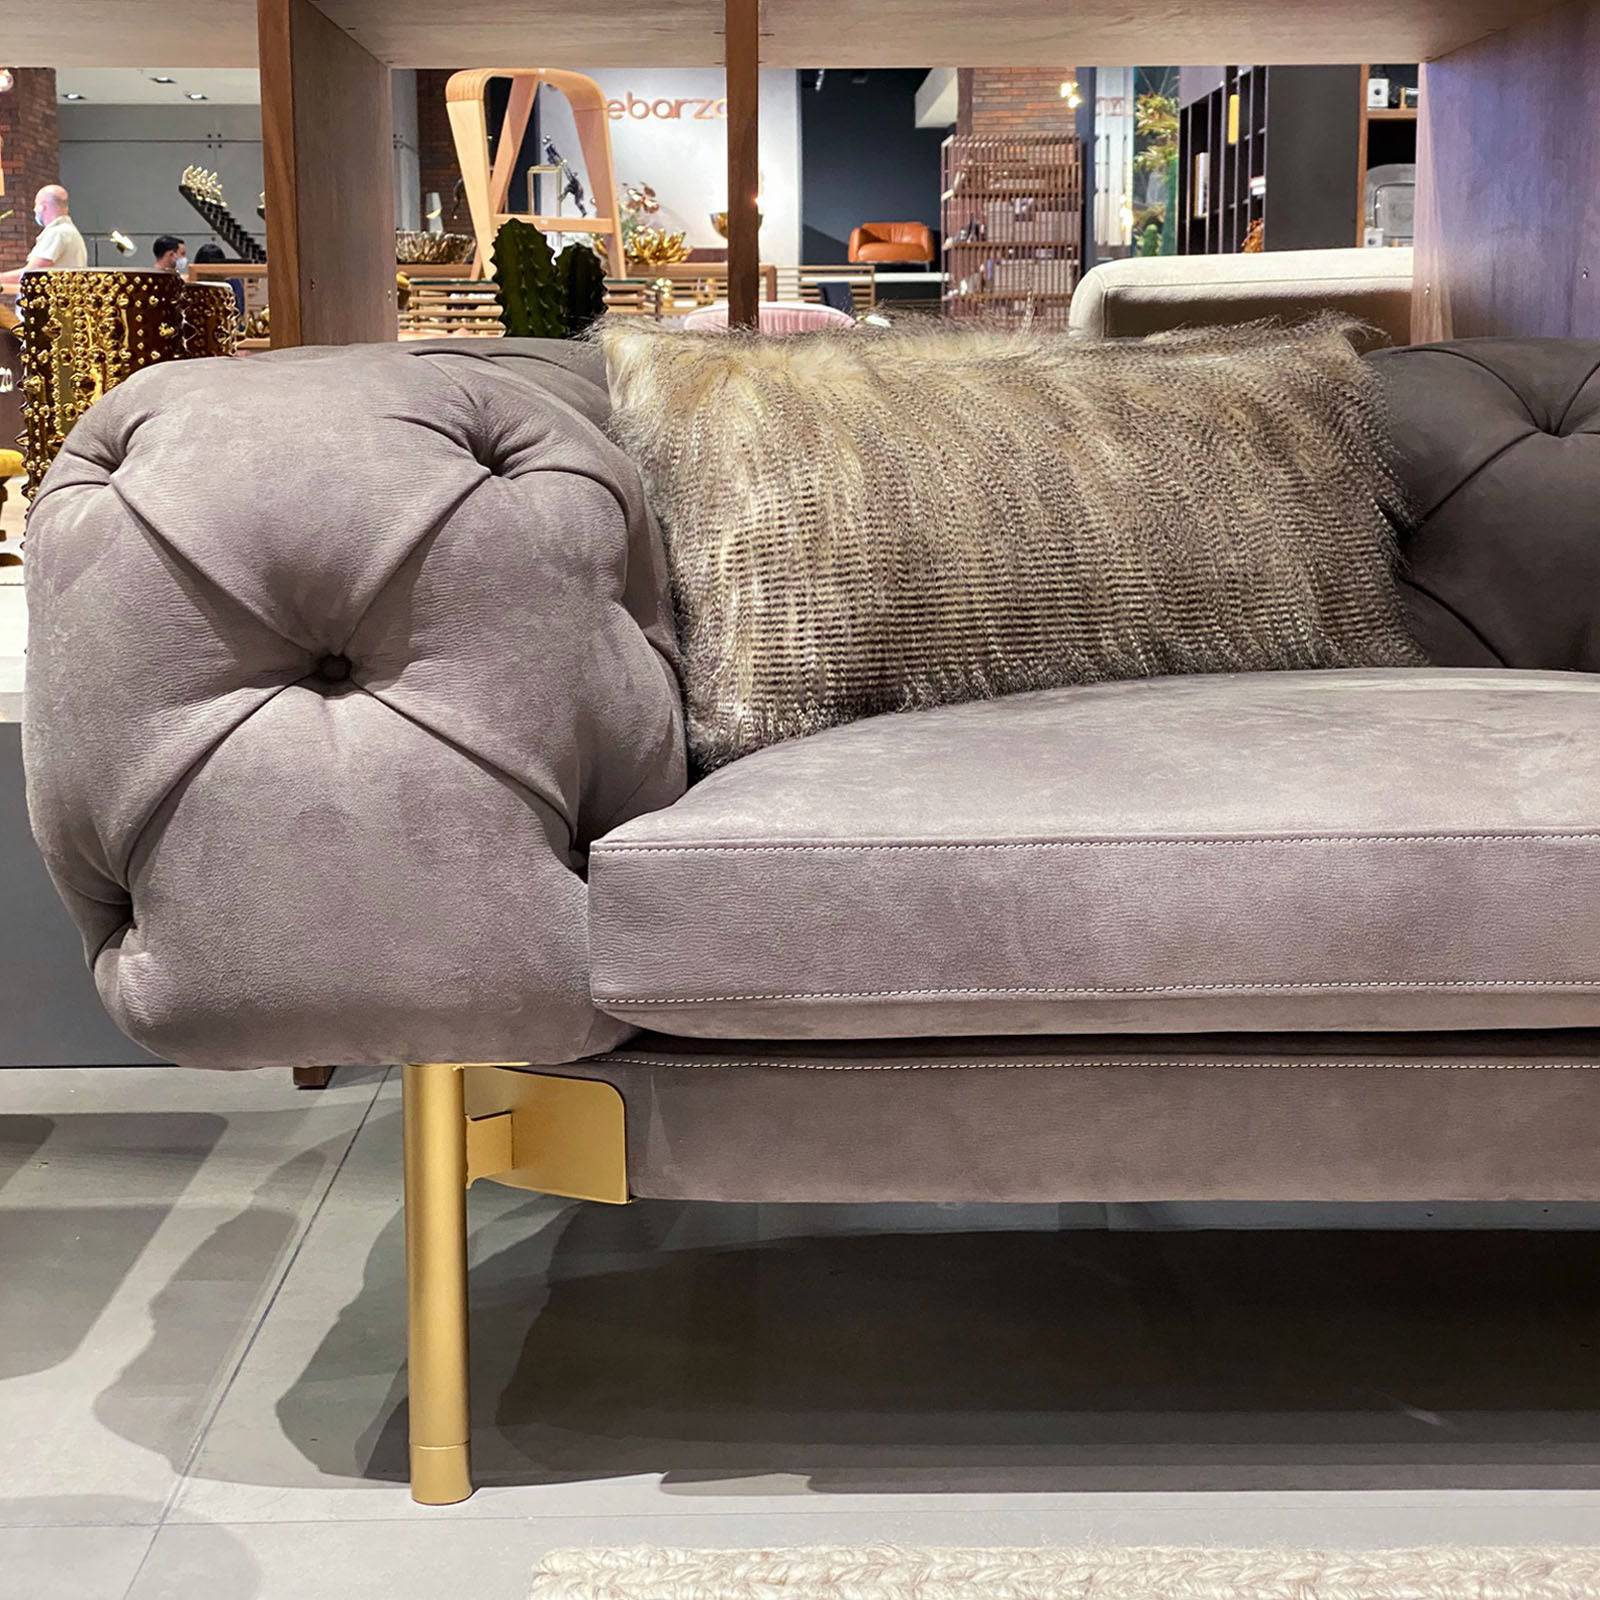 30X60 Cm Cushion Cover 2151-004 -  Cushions | 30X60 غطاء وسادة - ebarza Furniture UAE | Shop Modern Furniture in Abu Dhabi & Dubai - مفروشات ايبازرا في الامارات | تسوق اثاث عصري وديكورات مميزة في دبي وابوظبي